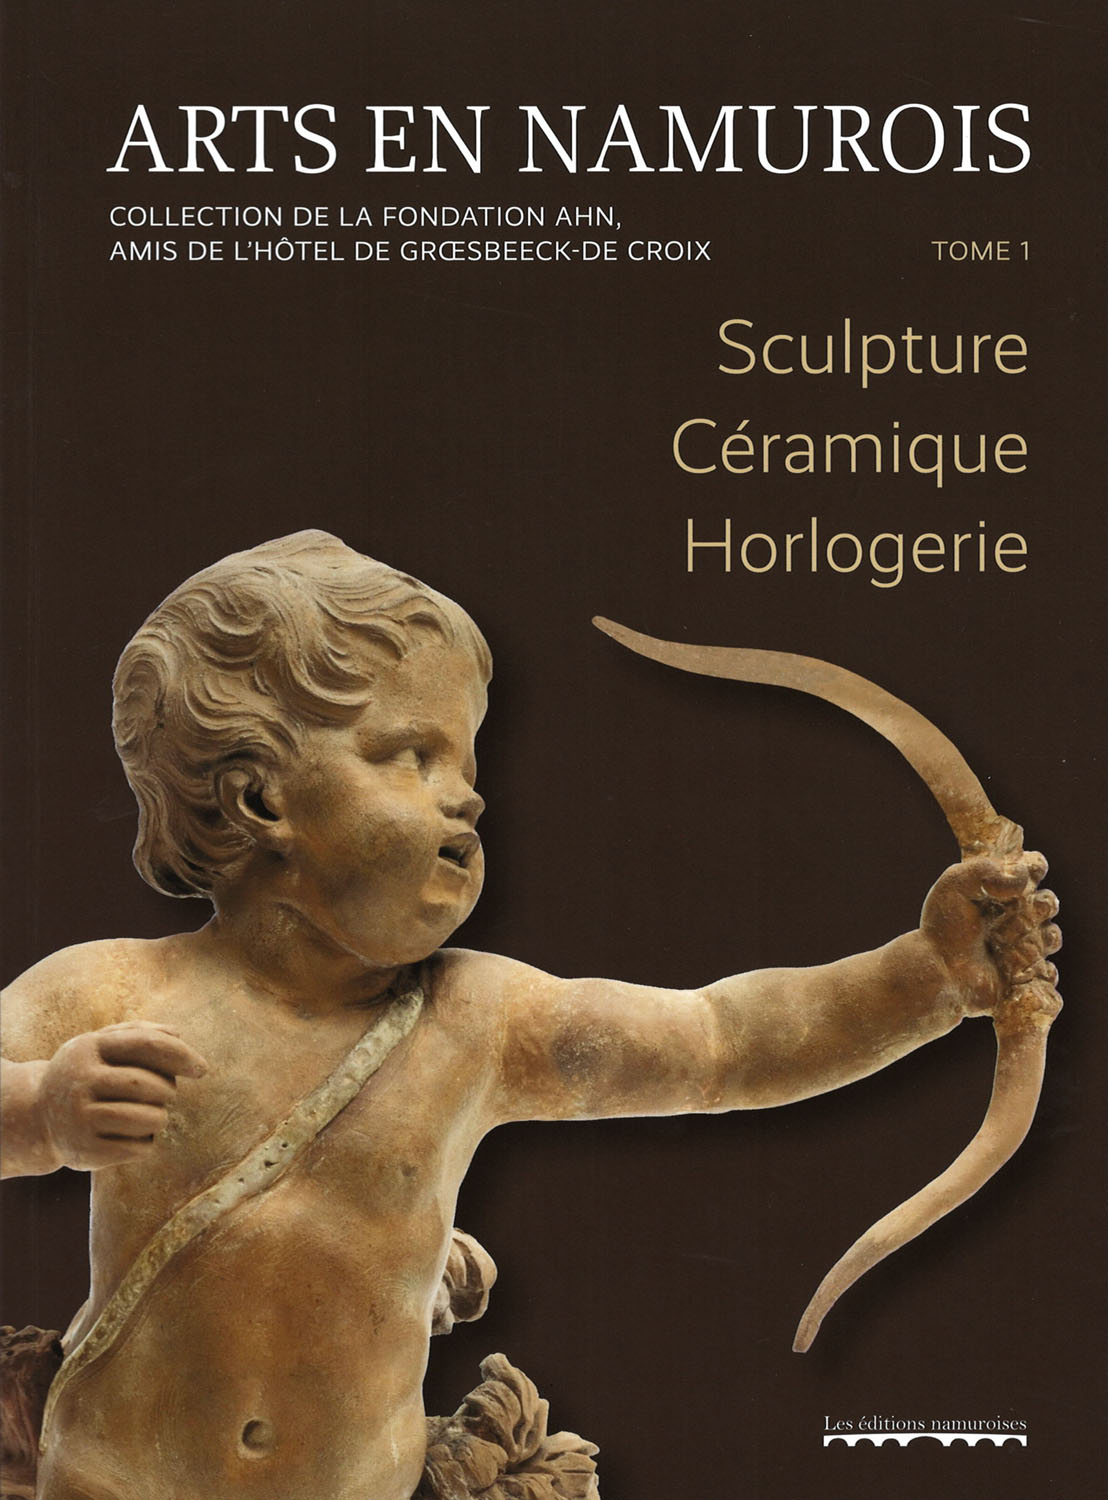 Couverture de l'ouvrage intitulé : Arts en Namurois, Sculpture, Céramique, Horlogerie, tome 1, Namur 2022.